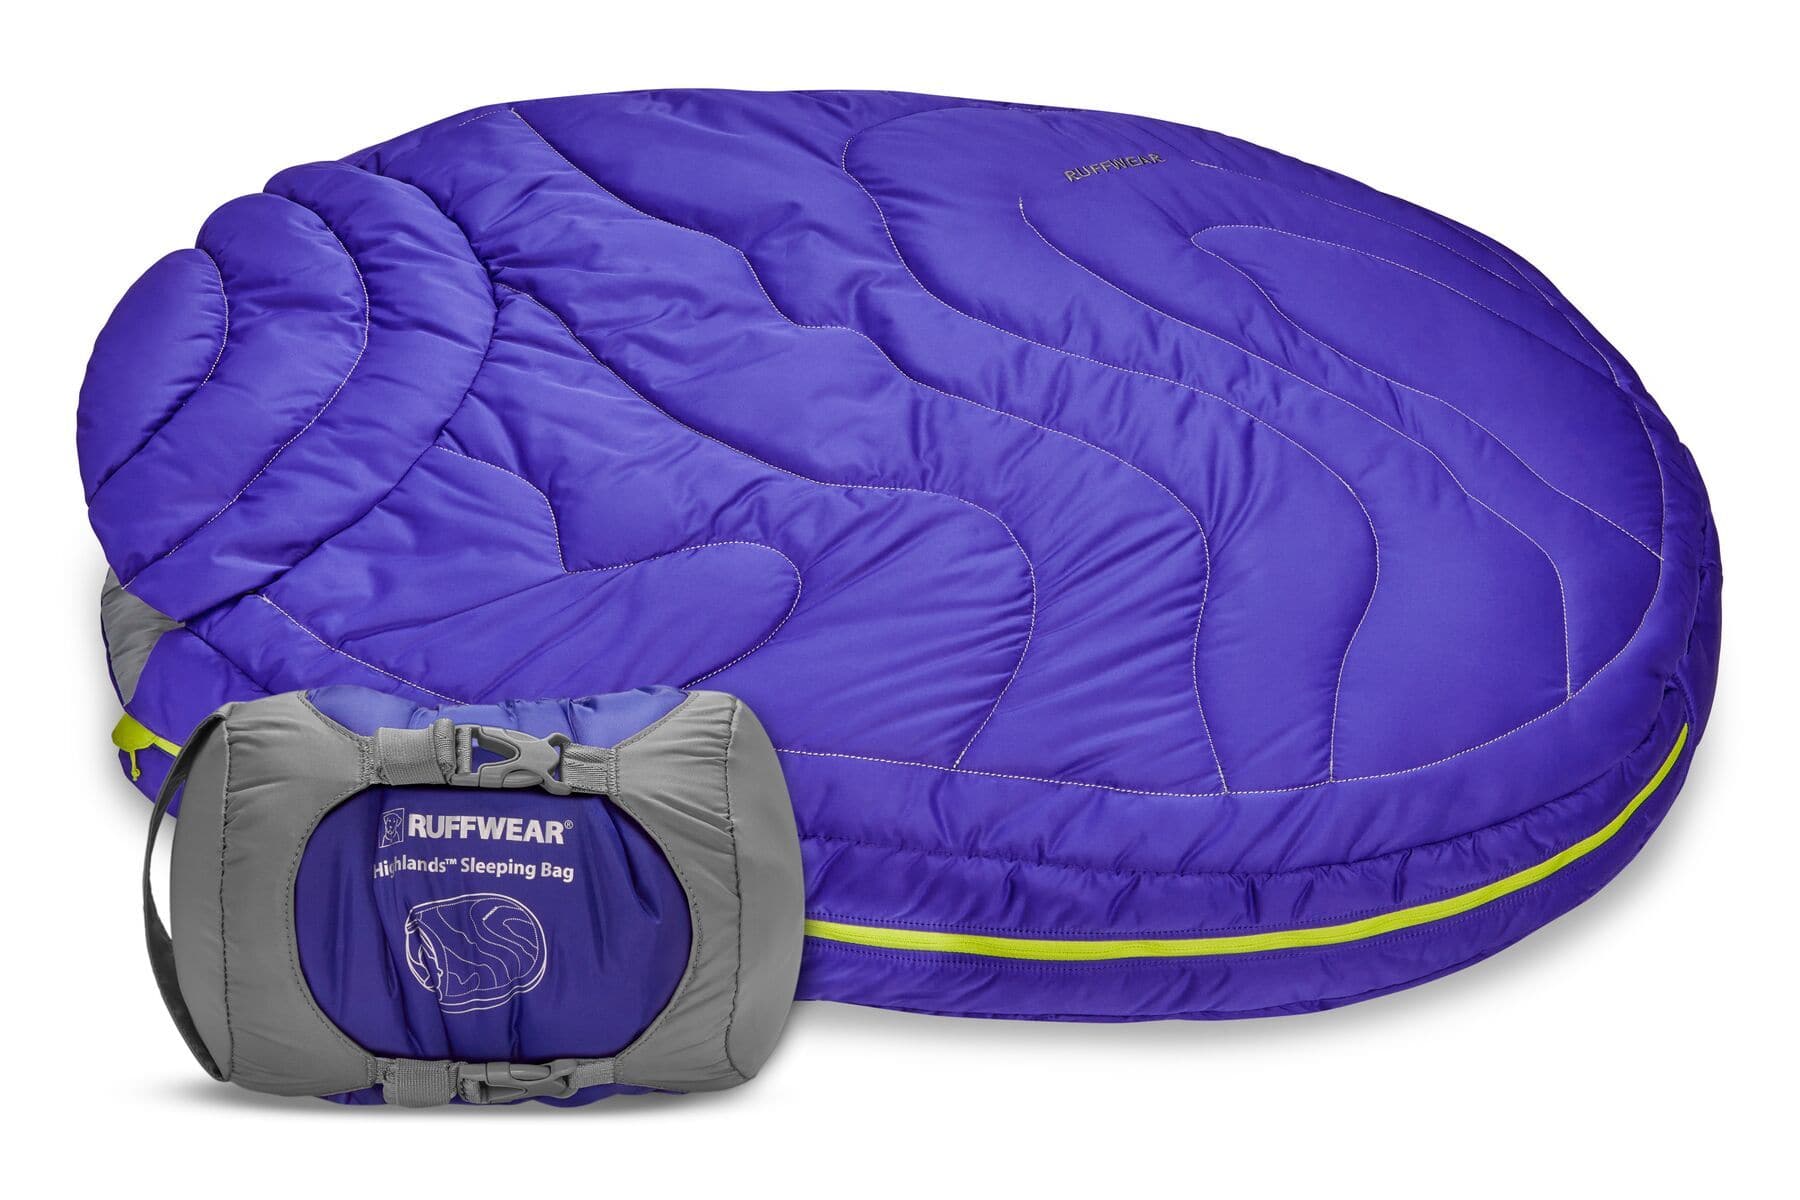 Sleeping Bag para Perros Portable Highlands Sleeping Bag de Ruffwear®